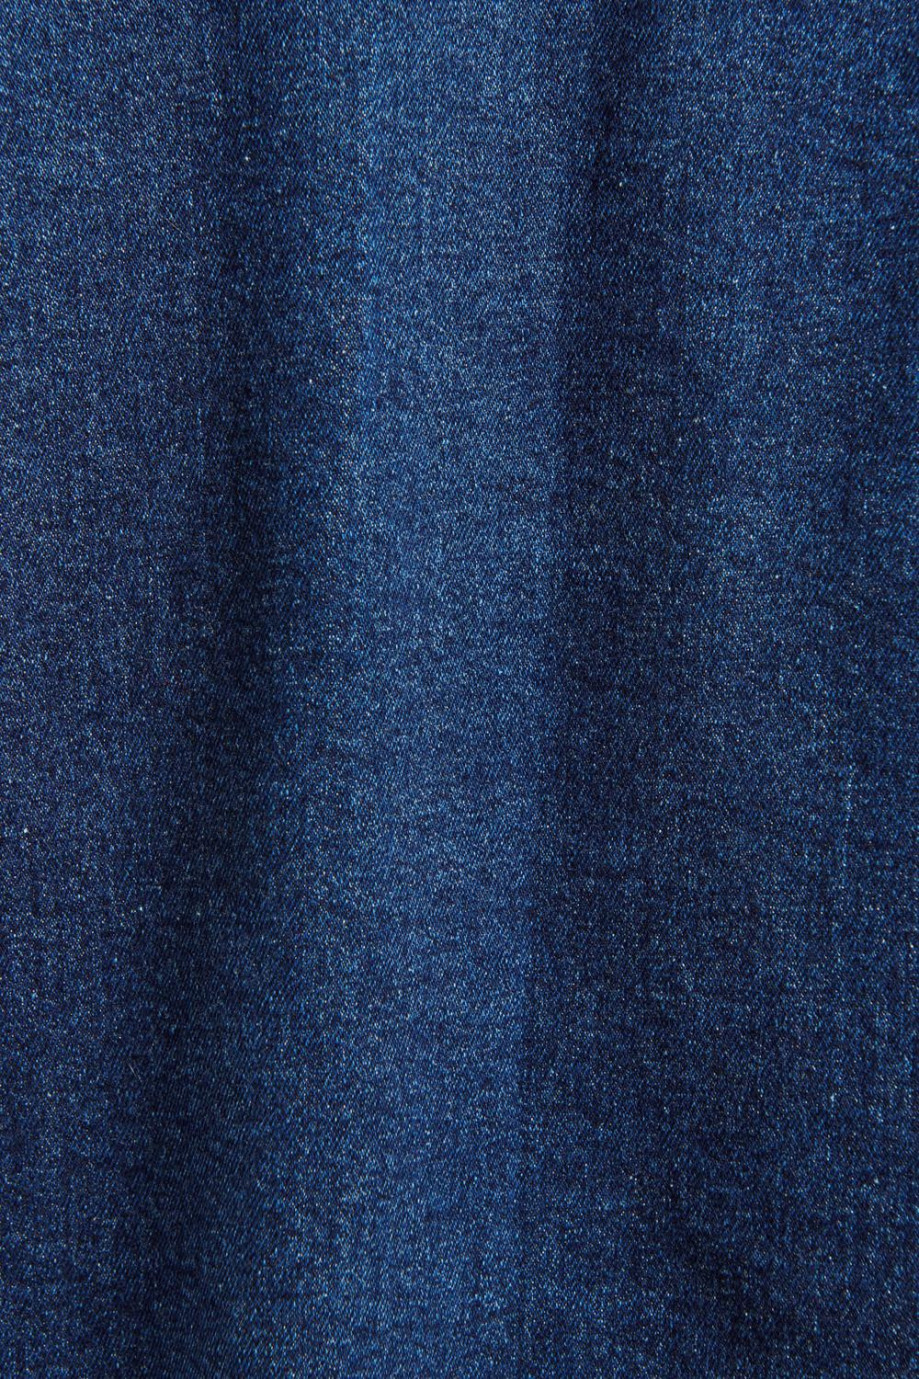 Chaqueta oversize azul oscura de jean con bolsillos de parche y cuello sport